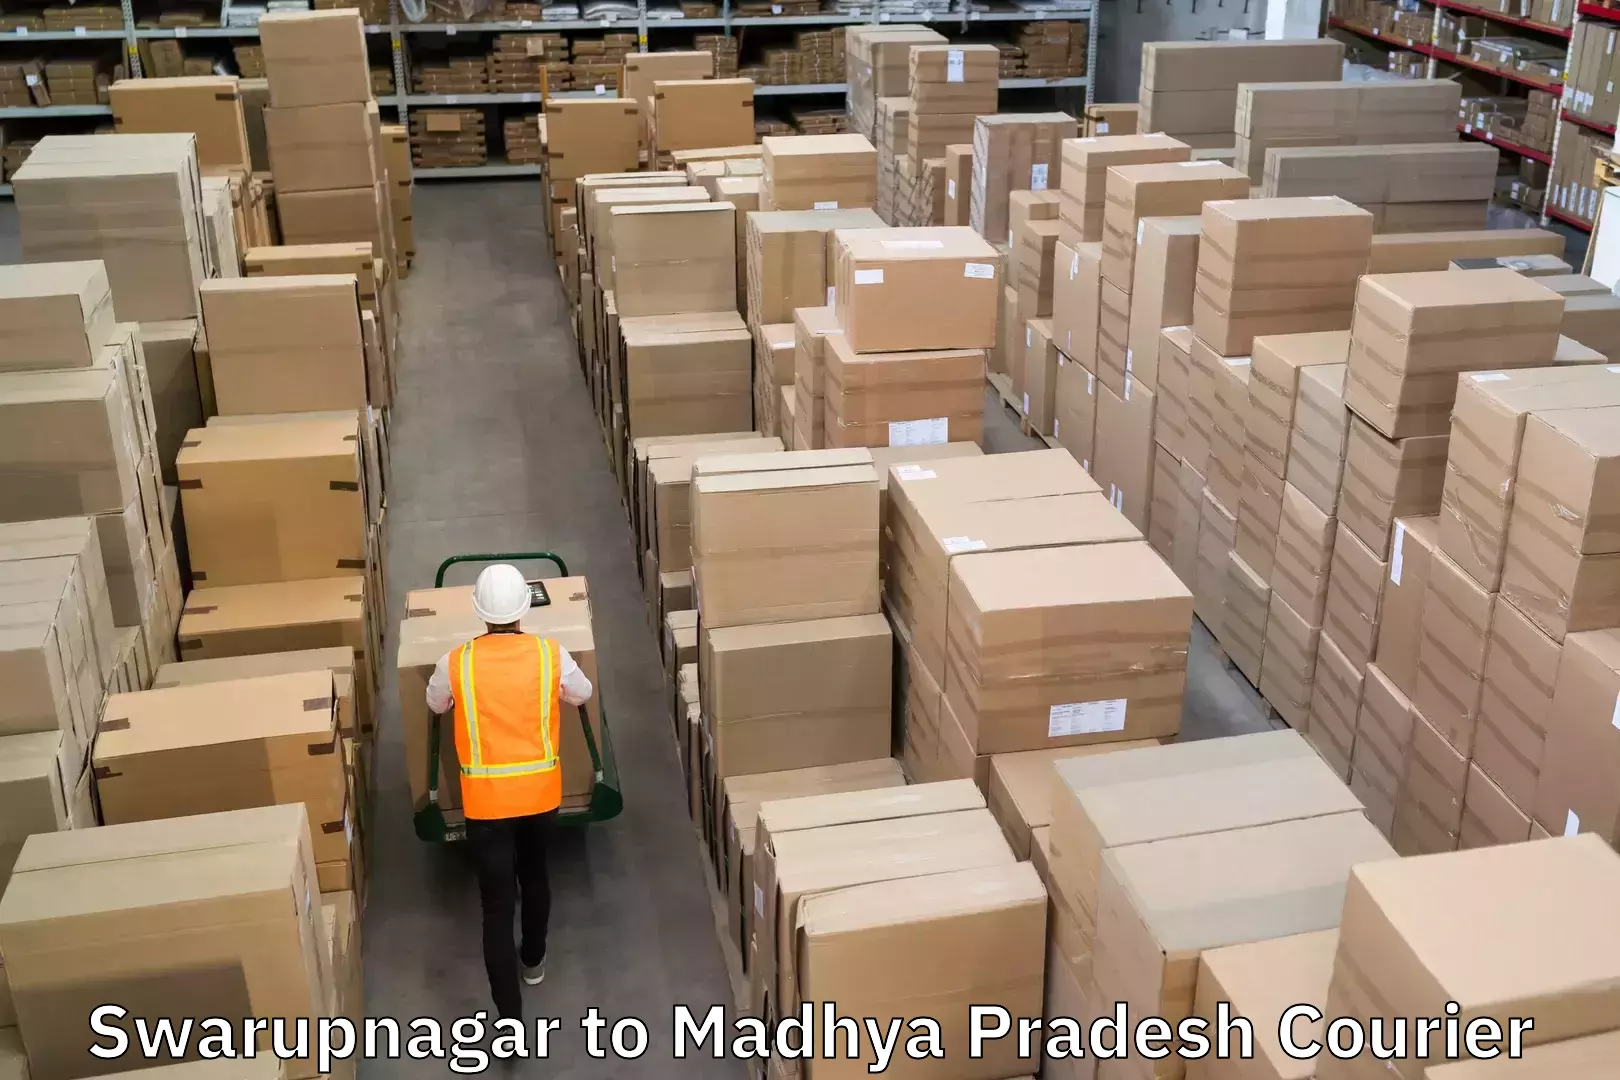 Cash on delivery service in Swarupnagar to Madhya Pradesh